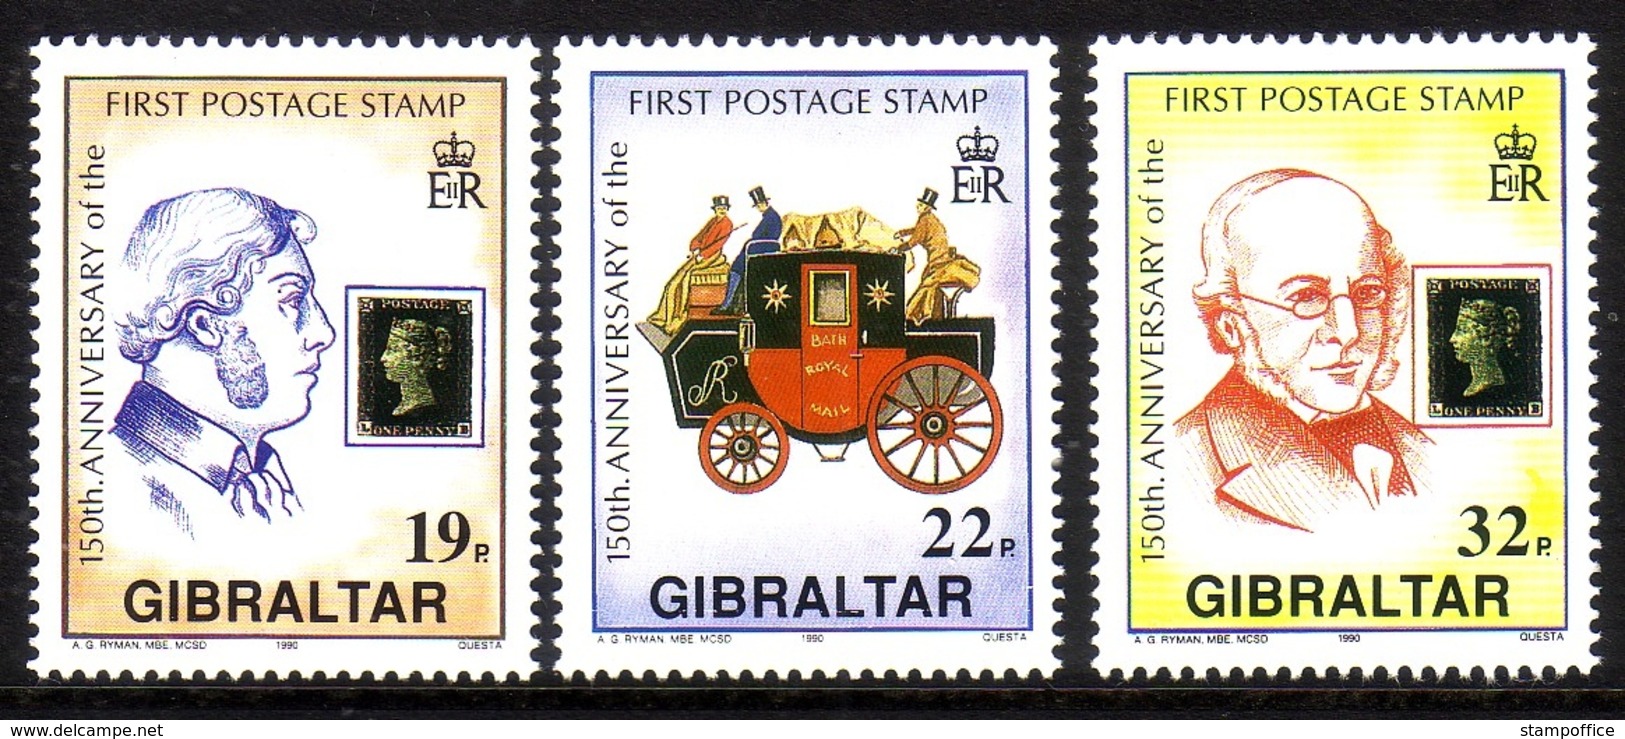 GIBRALTAR MI-NR. 598-600 ** 150 JAHRE BRIEFMARKE SIR ROWLAND HILL POSTKUTSCHE - Gibraltar